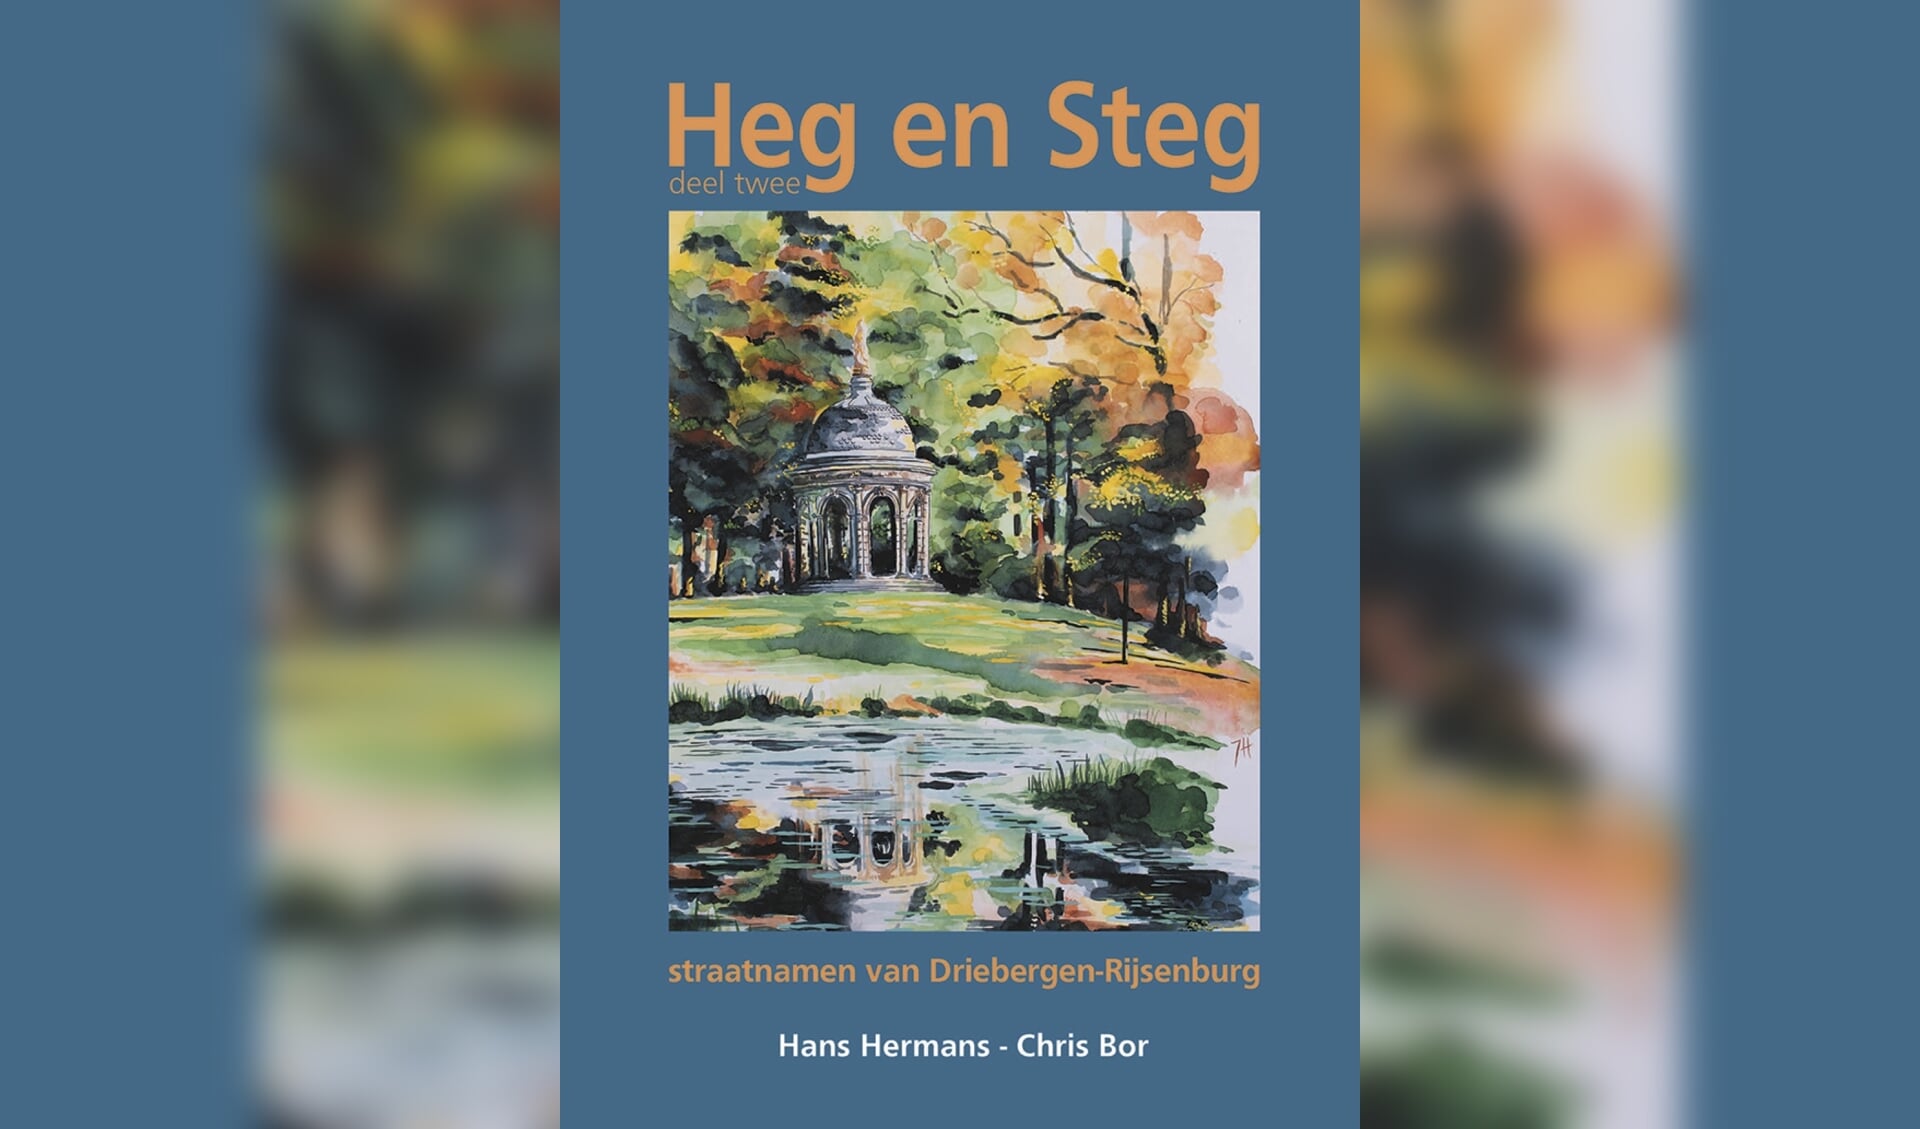 Hans Hermans en Chris Bor hebben een tweede deel gemaakt van Heg en Steg. 